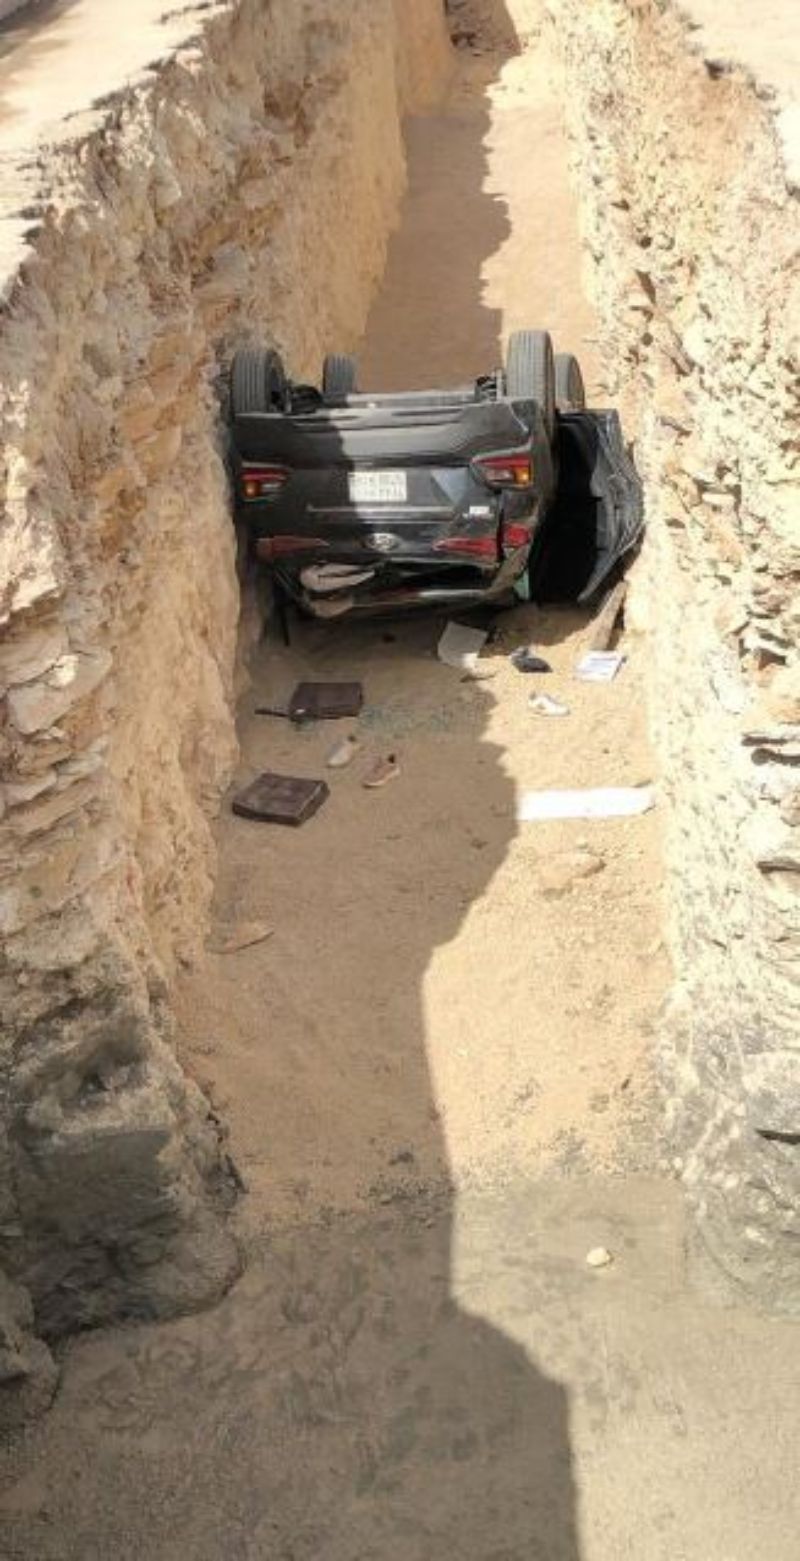 "بالصور" حادث مروع لسيارة انقلبت في حفرة وبداخلها 3 فتيات بالرياض 2